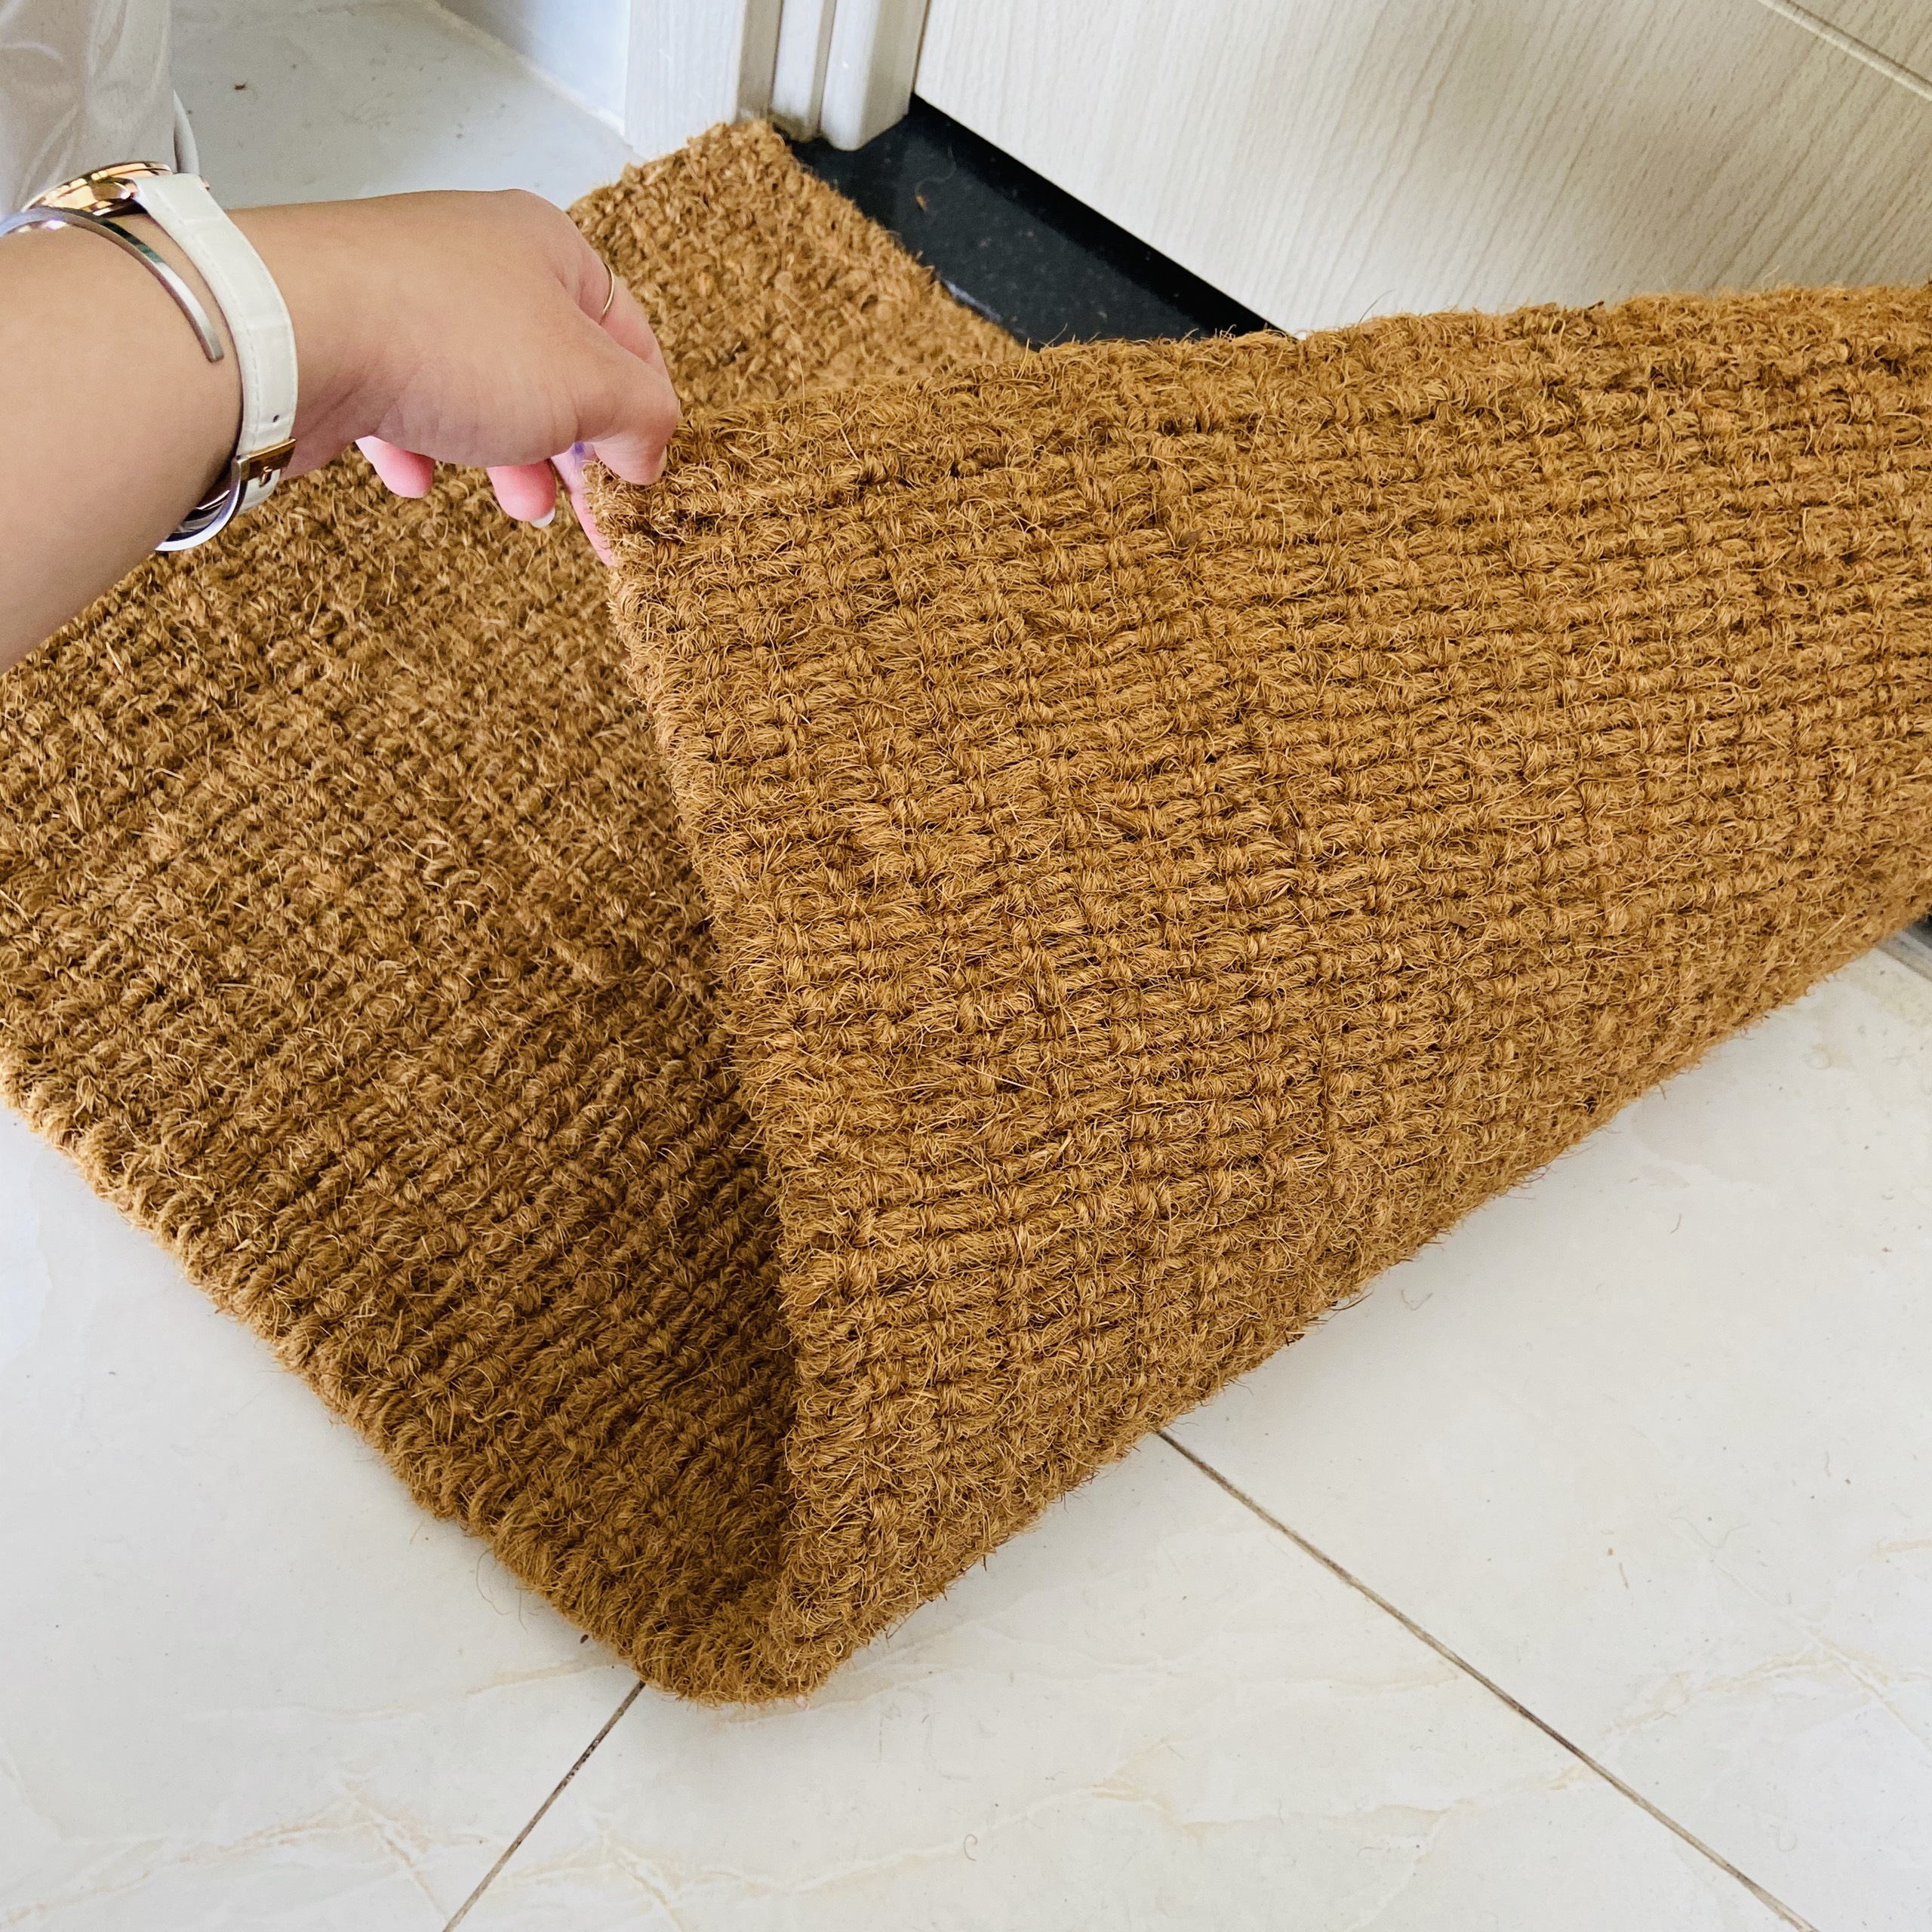 Thảm chùi chân bằng xơ dừa – Sản phẩm tự nhiên từ làng nghề dệt thảm xơ dừa